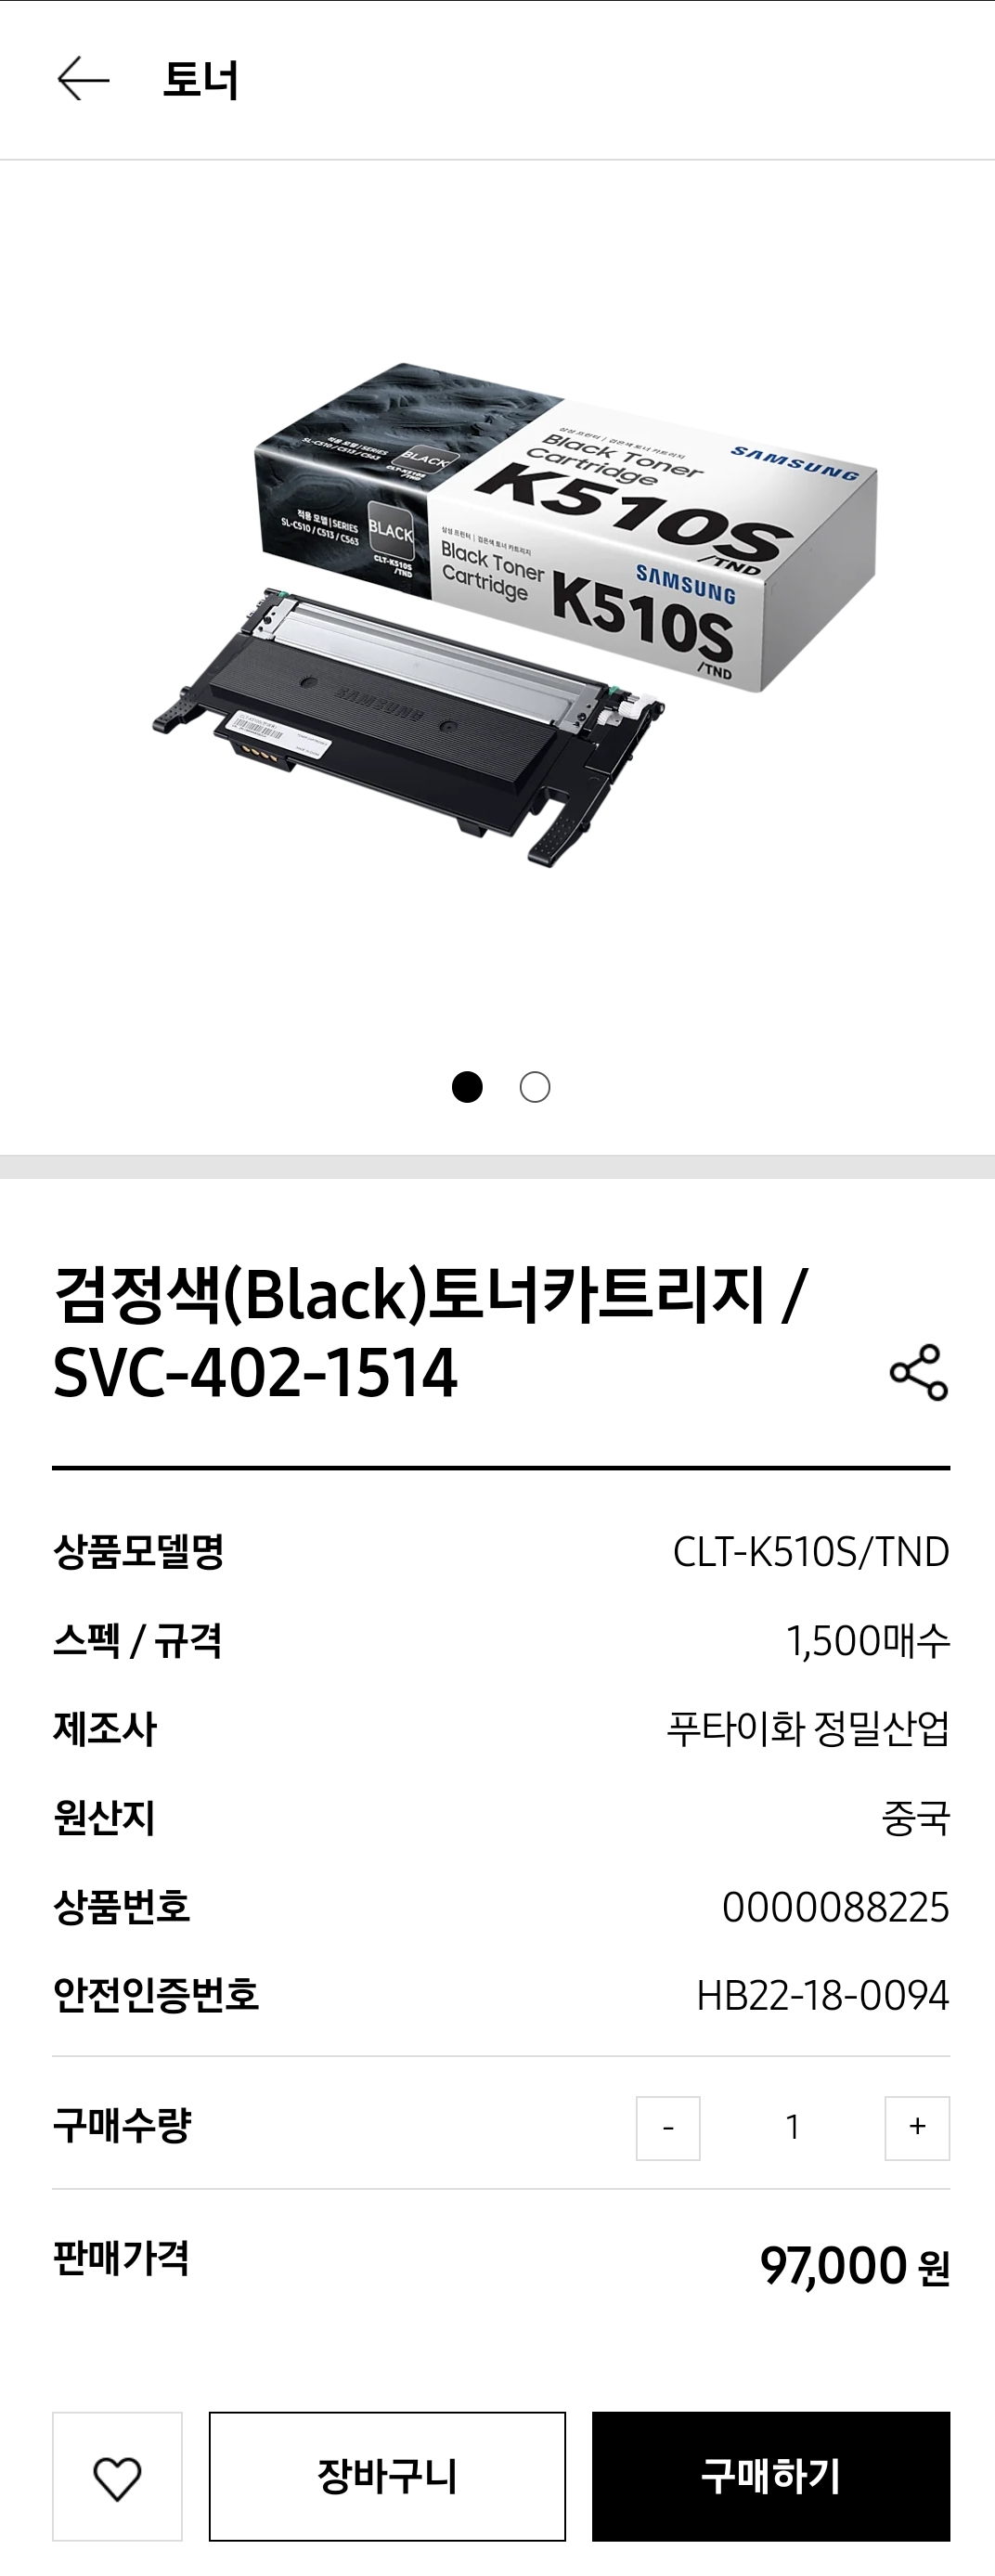 SL-C563W 검은색 토너 모델명 : K510S 9만7천원 비싸다 ㅜ.ㅜ